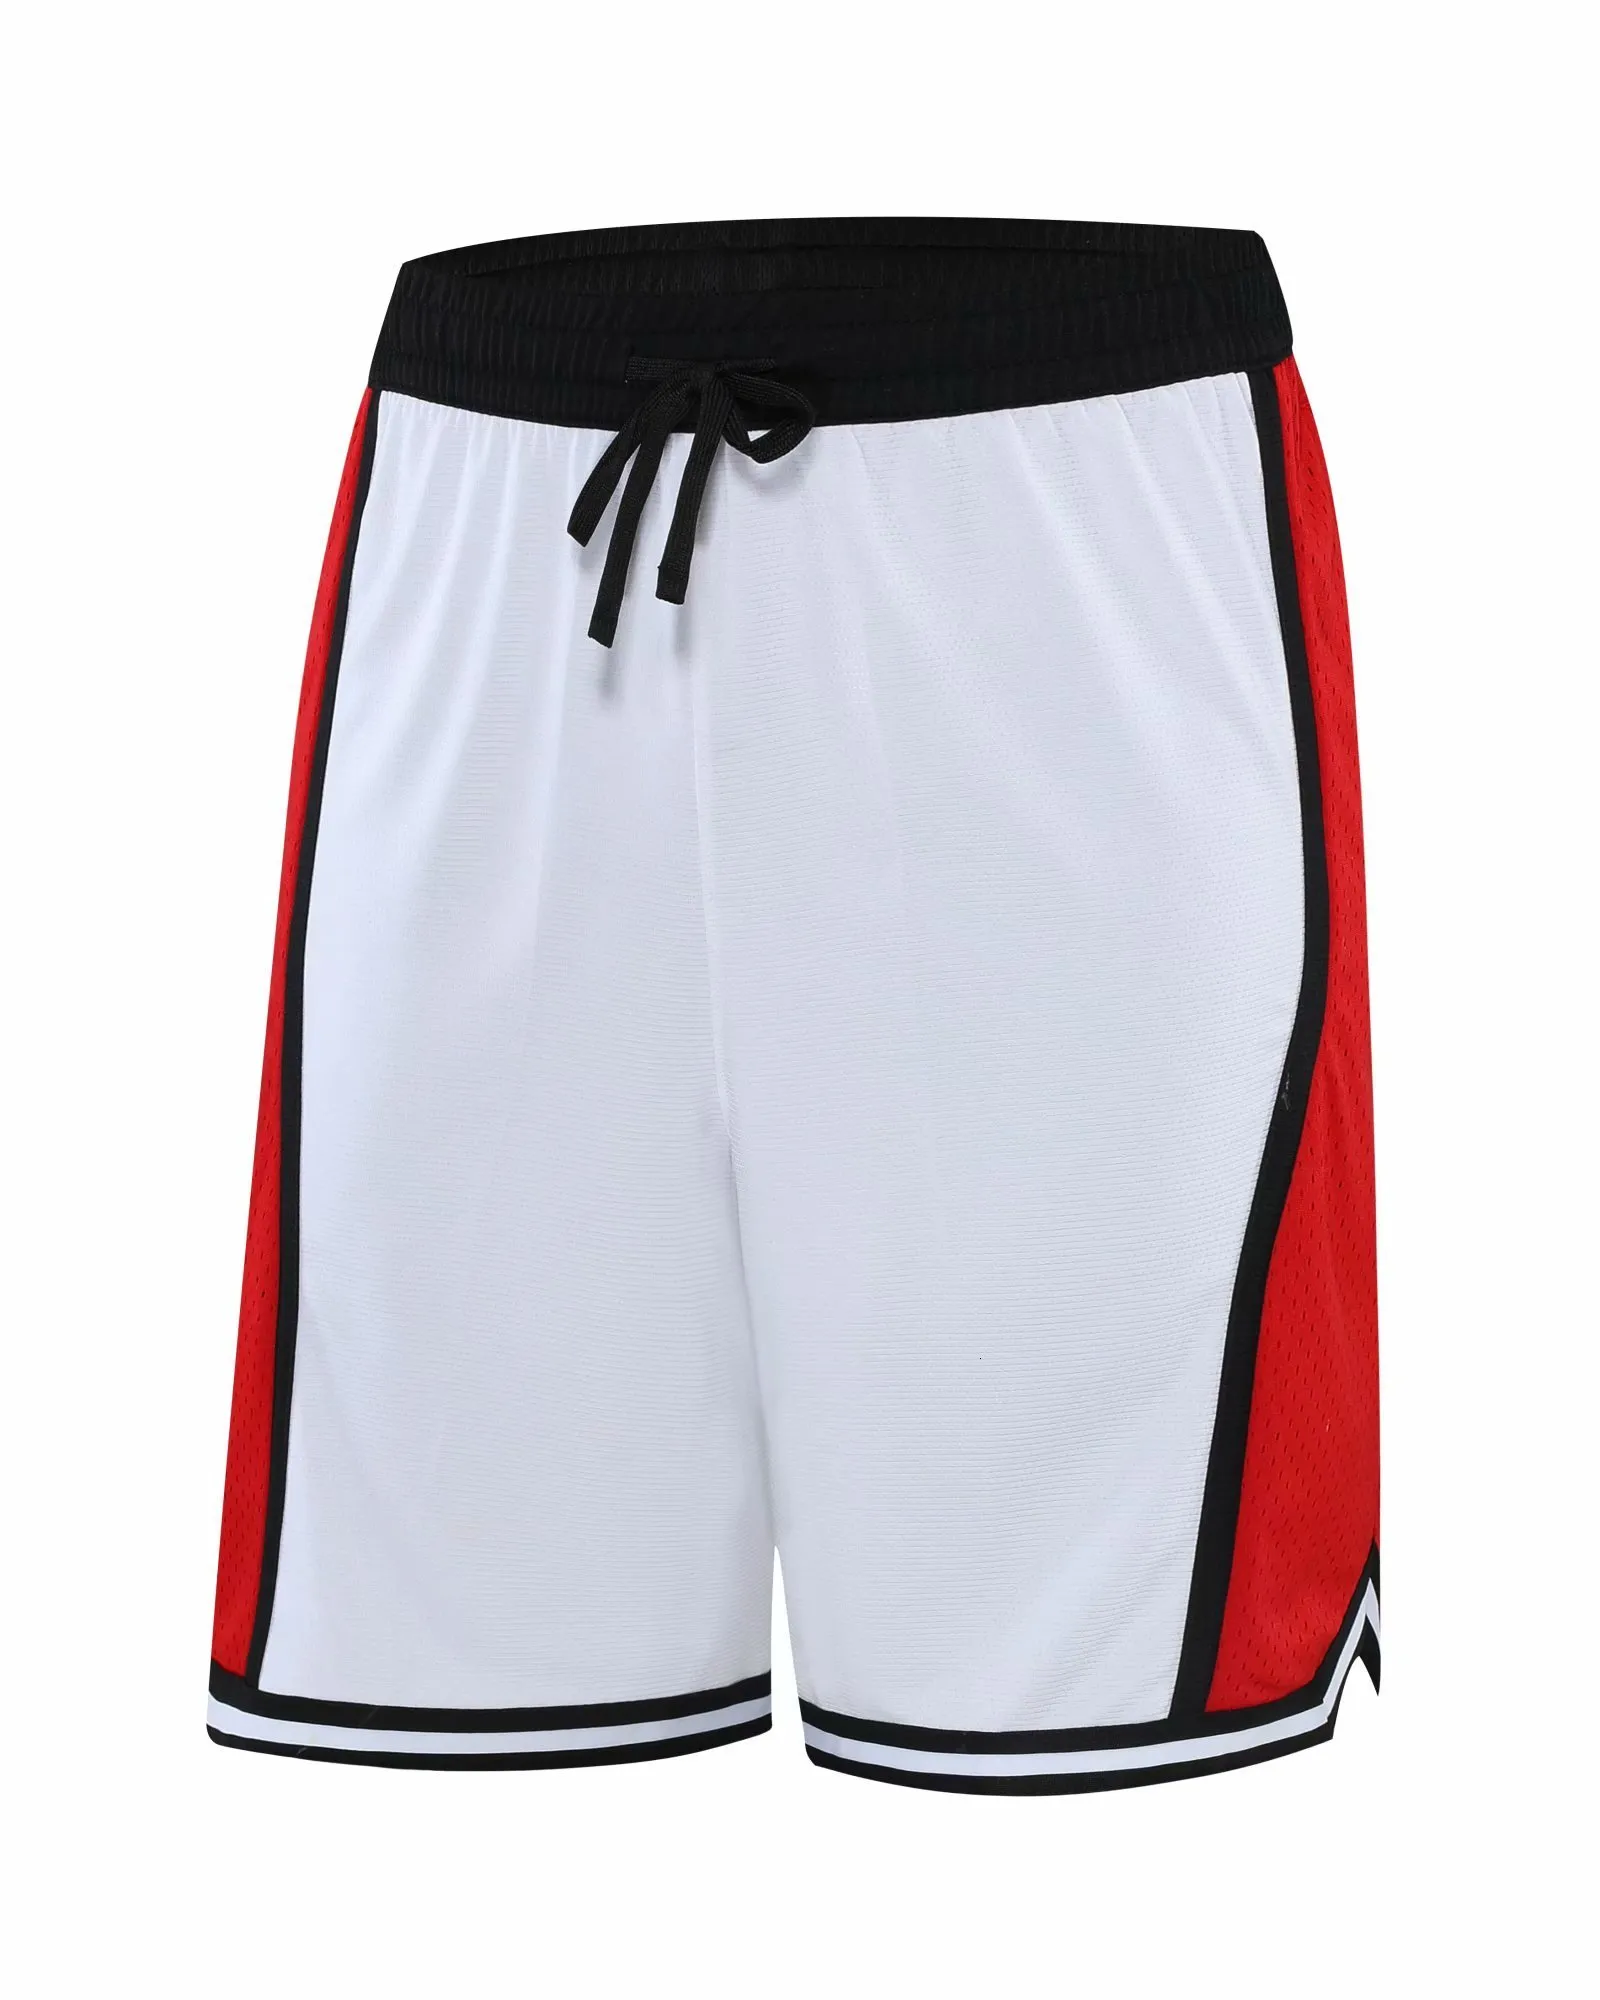 メンズショーツバスケットボールトレーニングS赤と白のコントラストファッションスポーツ通気性ランニングフィットネスカスタム230725